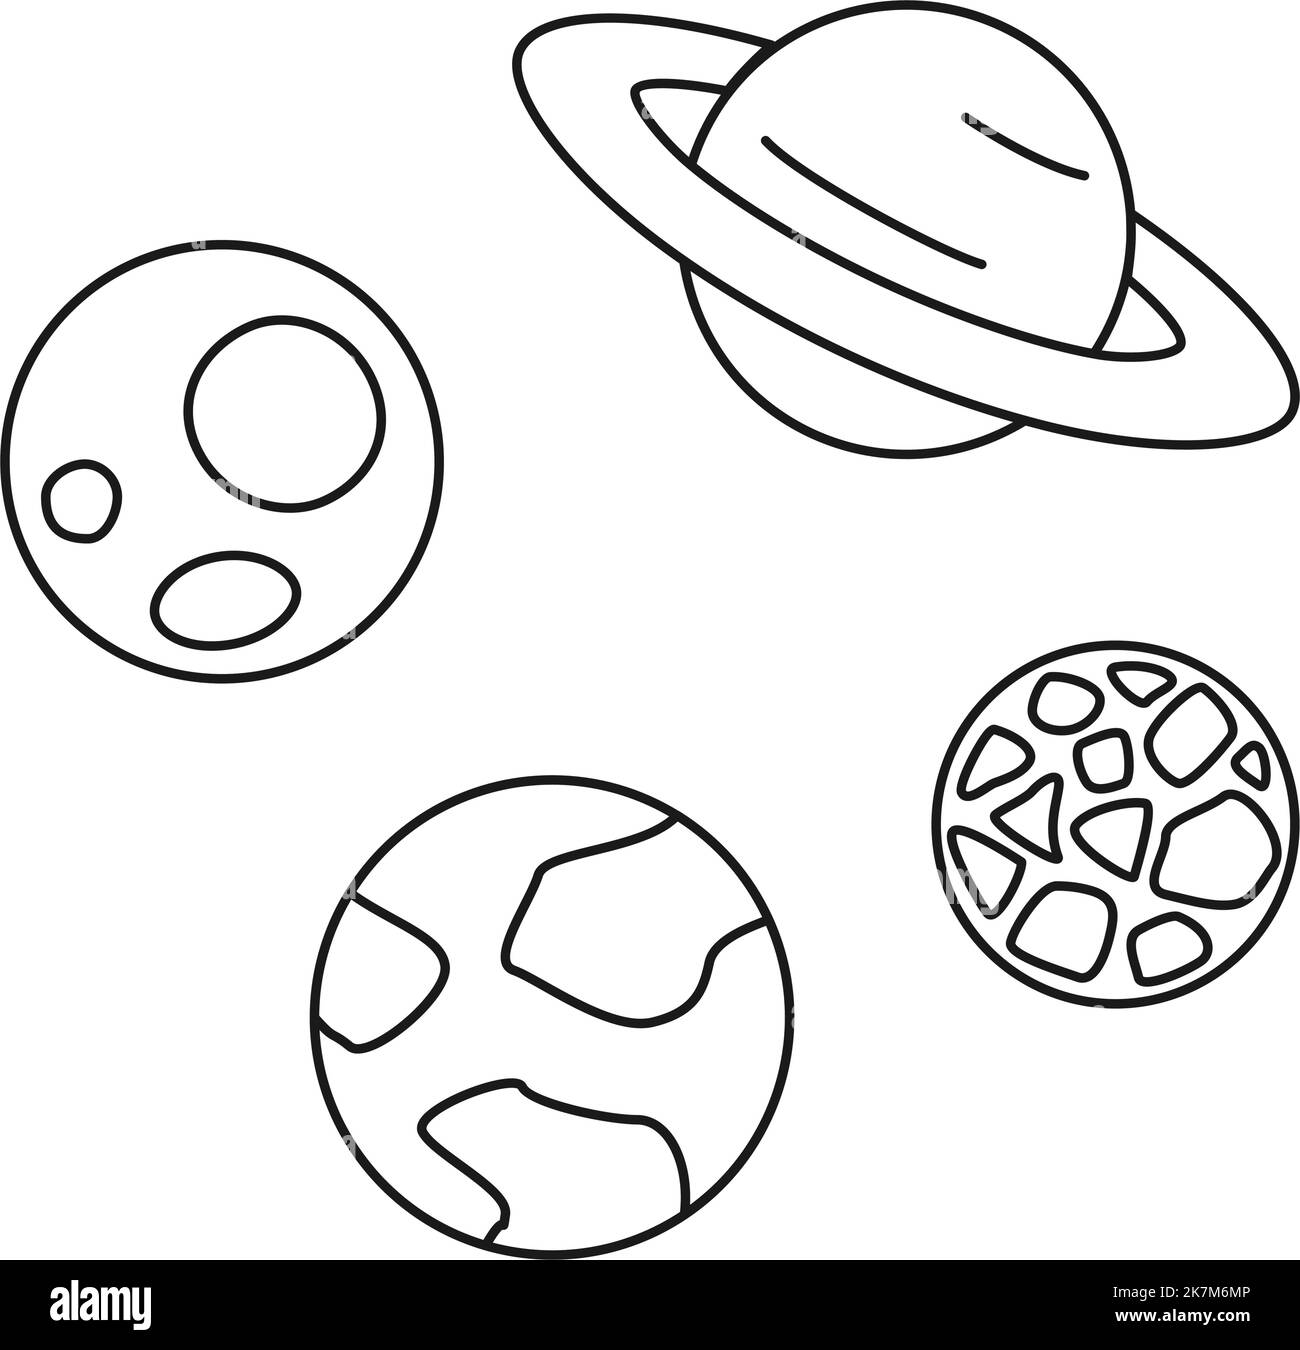 Ensemble noir et blanc de 4 planètes pour colorier le méditaion. Illustration vectorielle thématique de l'exploration scientifique pour l'icône, l'emblème, l'affiche, le site ou le décorat d'articles Illustration de Vecteur